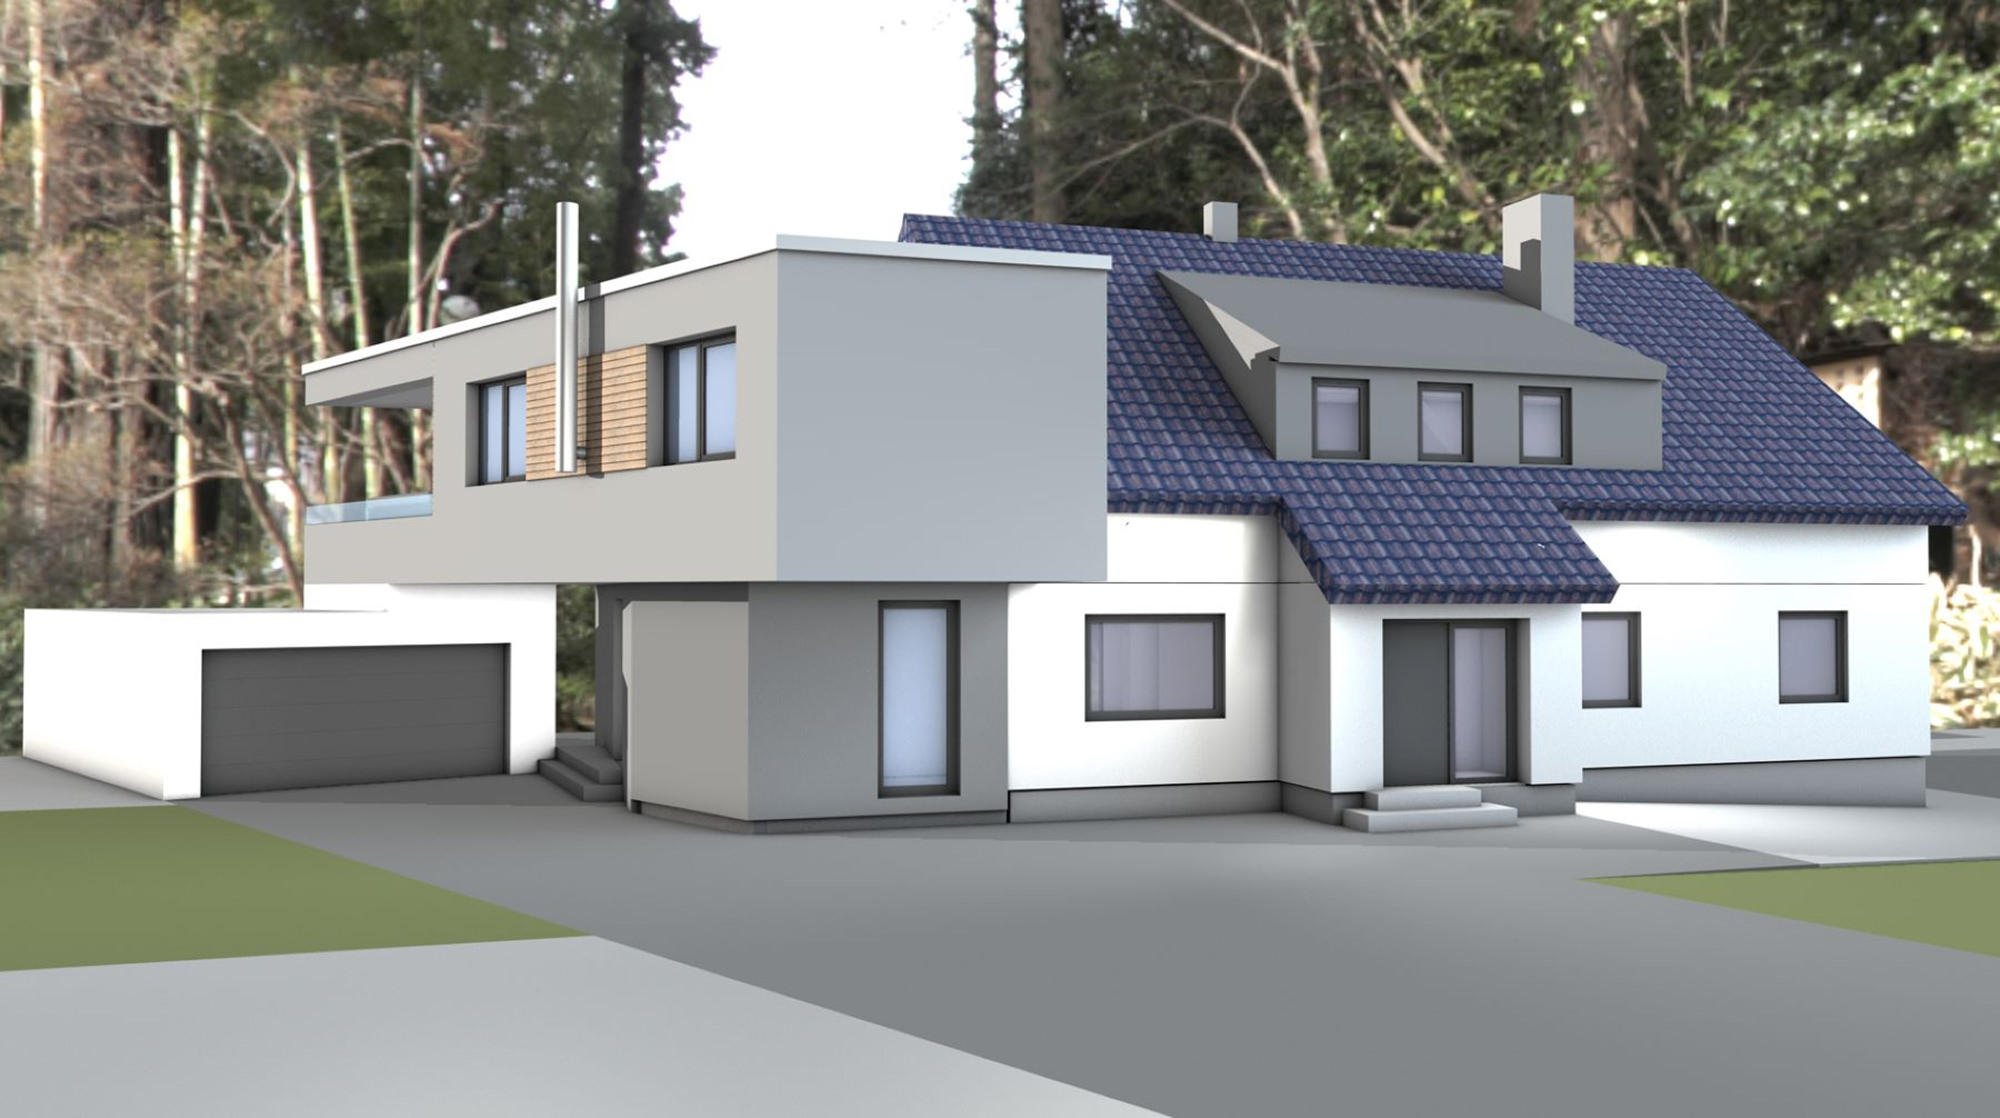 Anbau an ein Zweifamilienhaus Wuppertal - ah-architektur.de | Alisic-Haverkamp – Wir verfolgen das Ziel, funktionelle, kostenbewusste und ambitioniert gestaltete Architektur zu schaffen, die einen ah-Effekt auslöst.